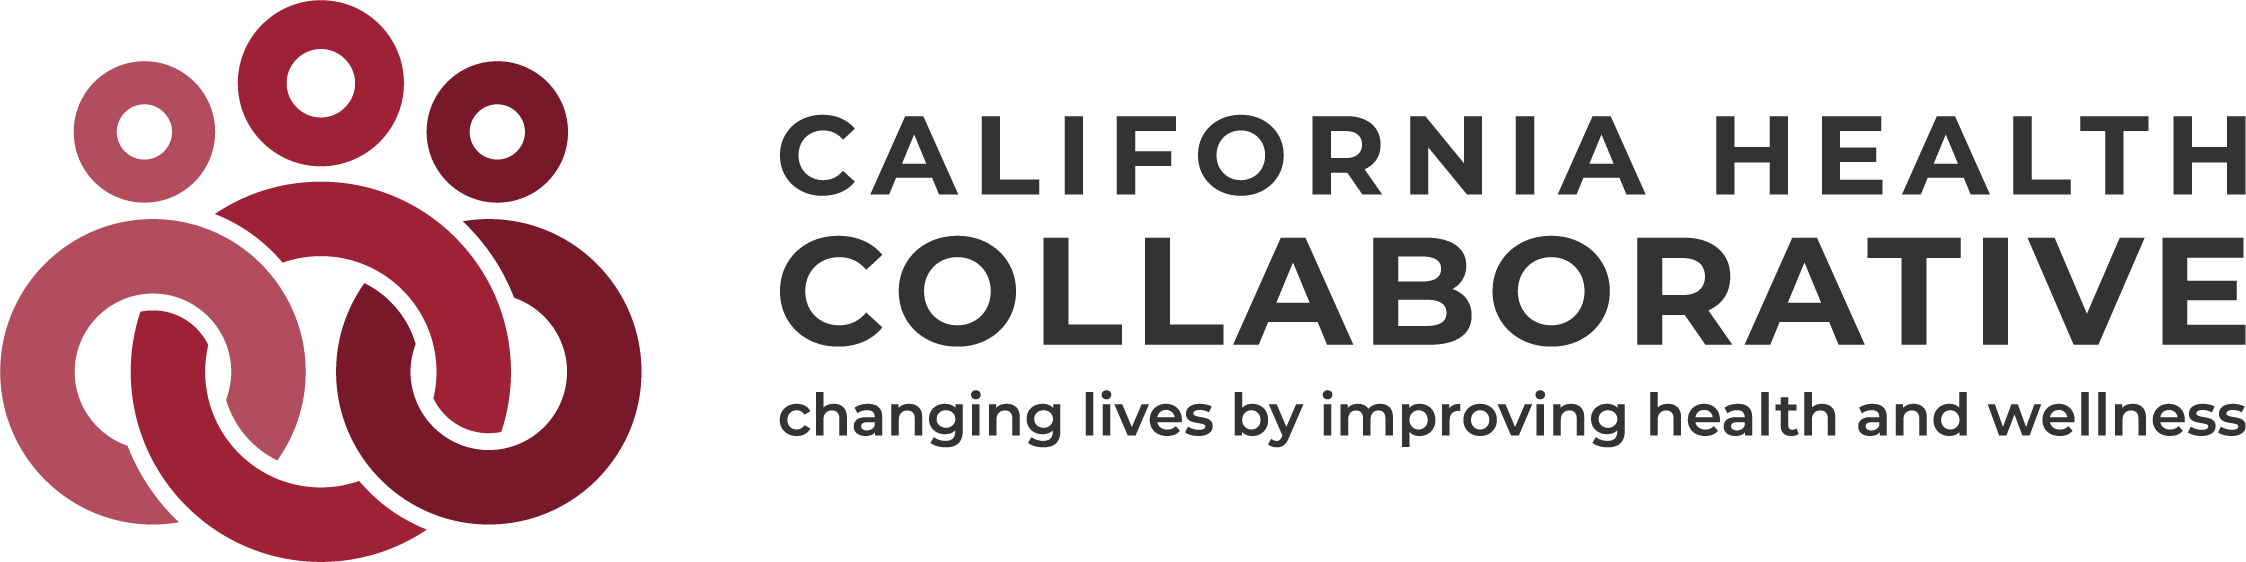 California Health Collaborative